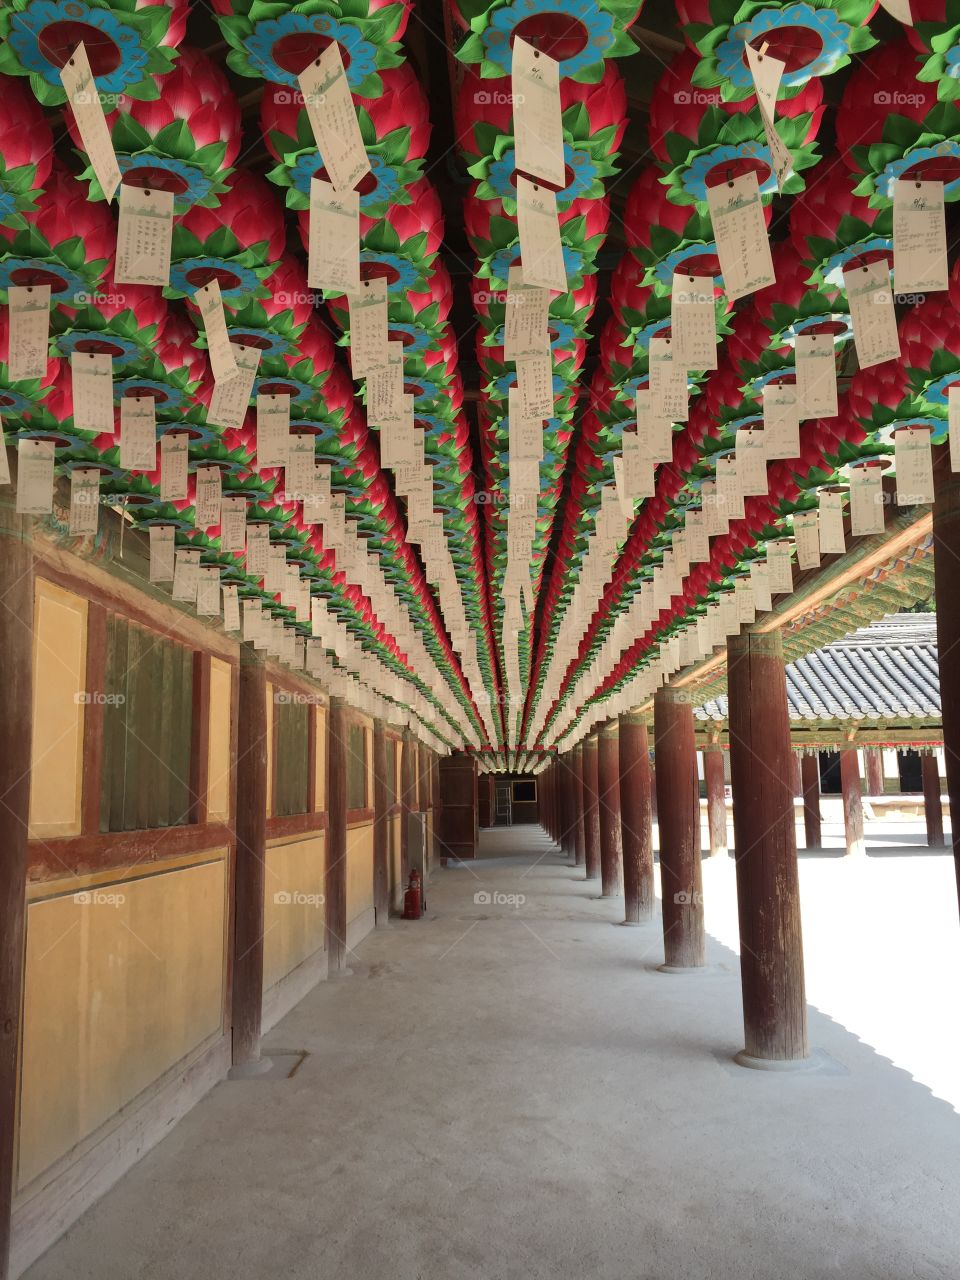 Praying lanterns hanged on Korean temple walkway